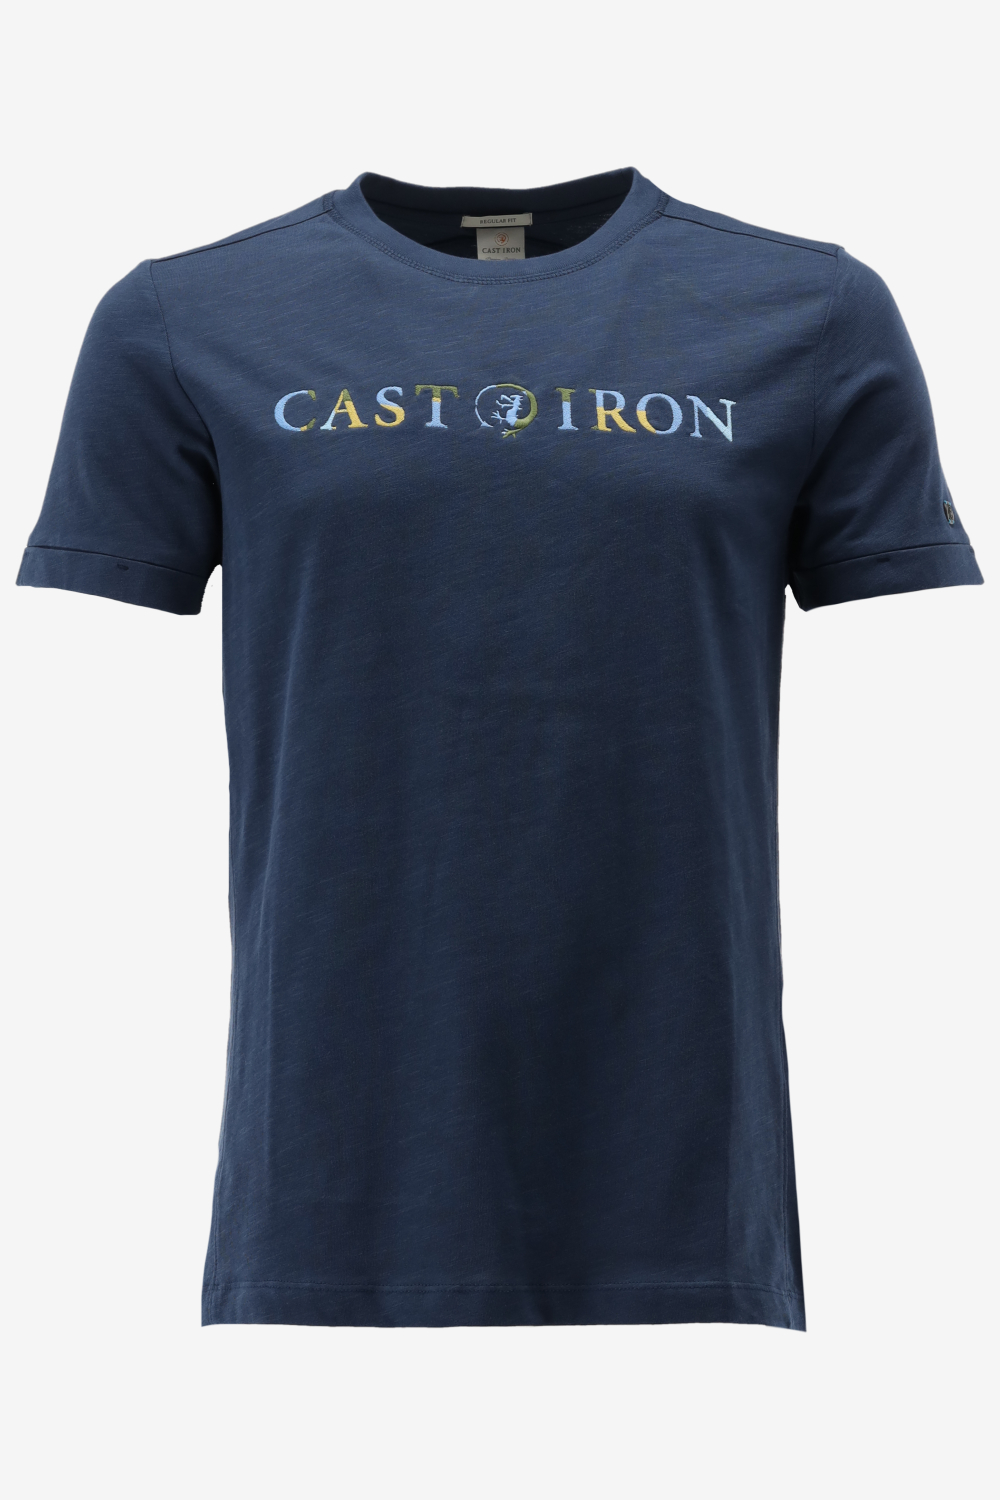 Cast Iron T-shirt 